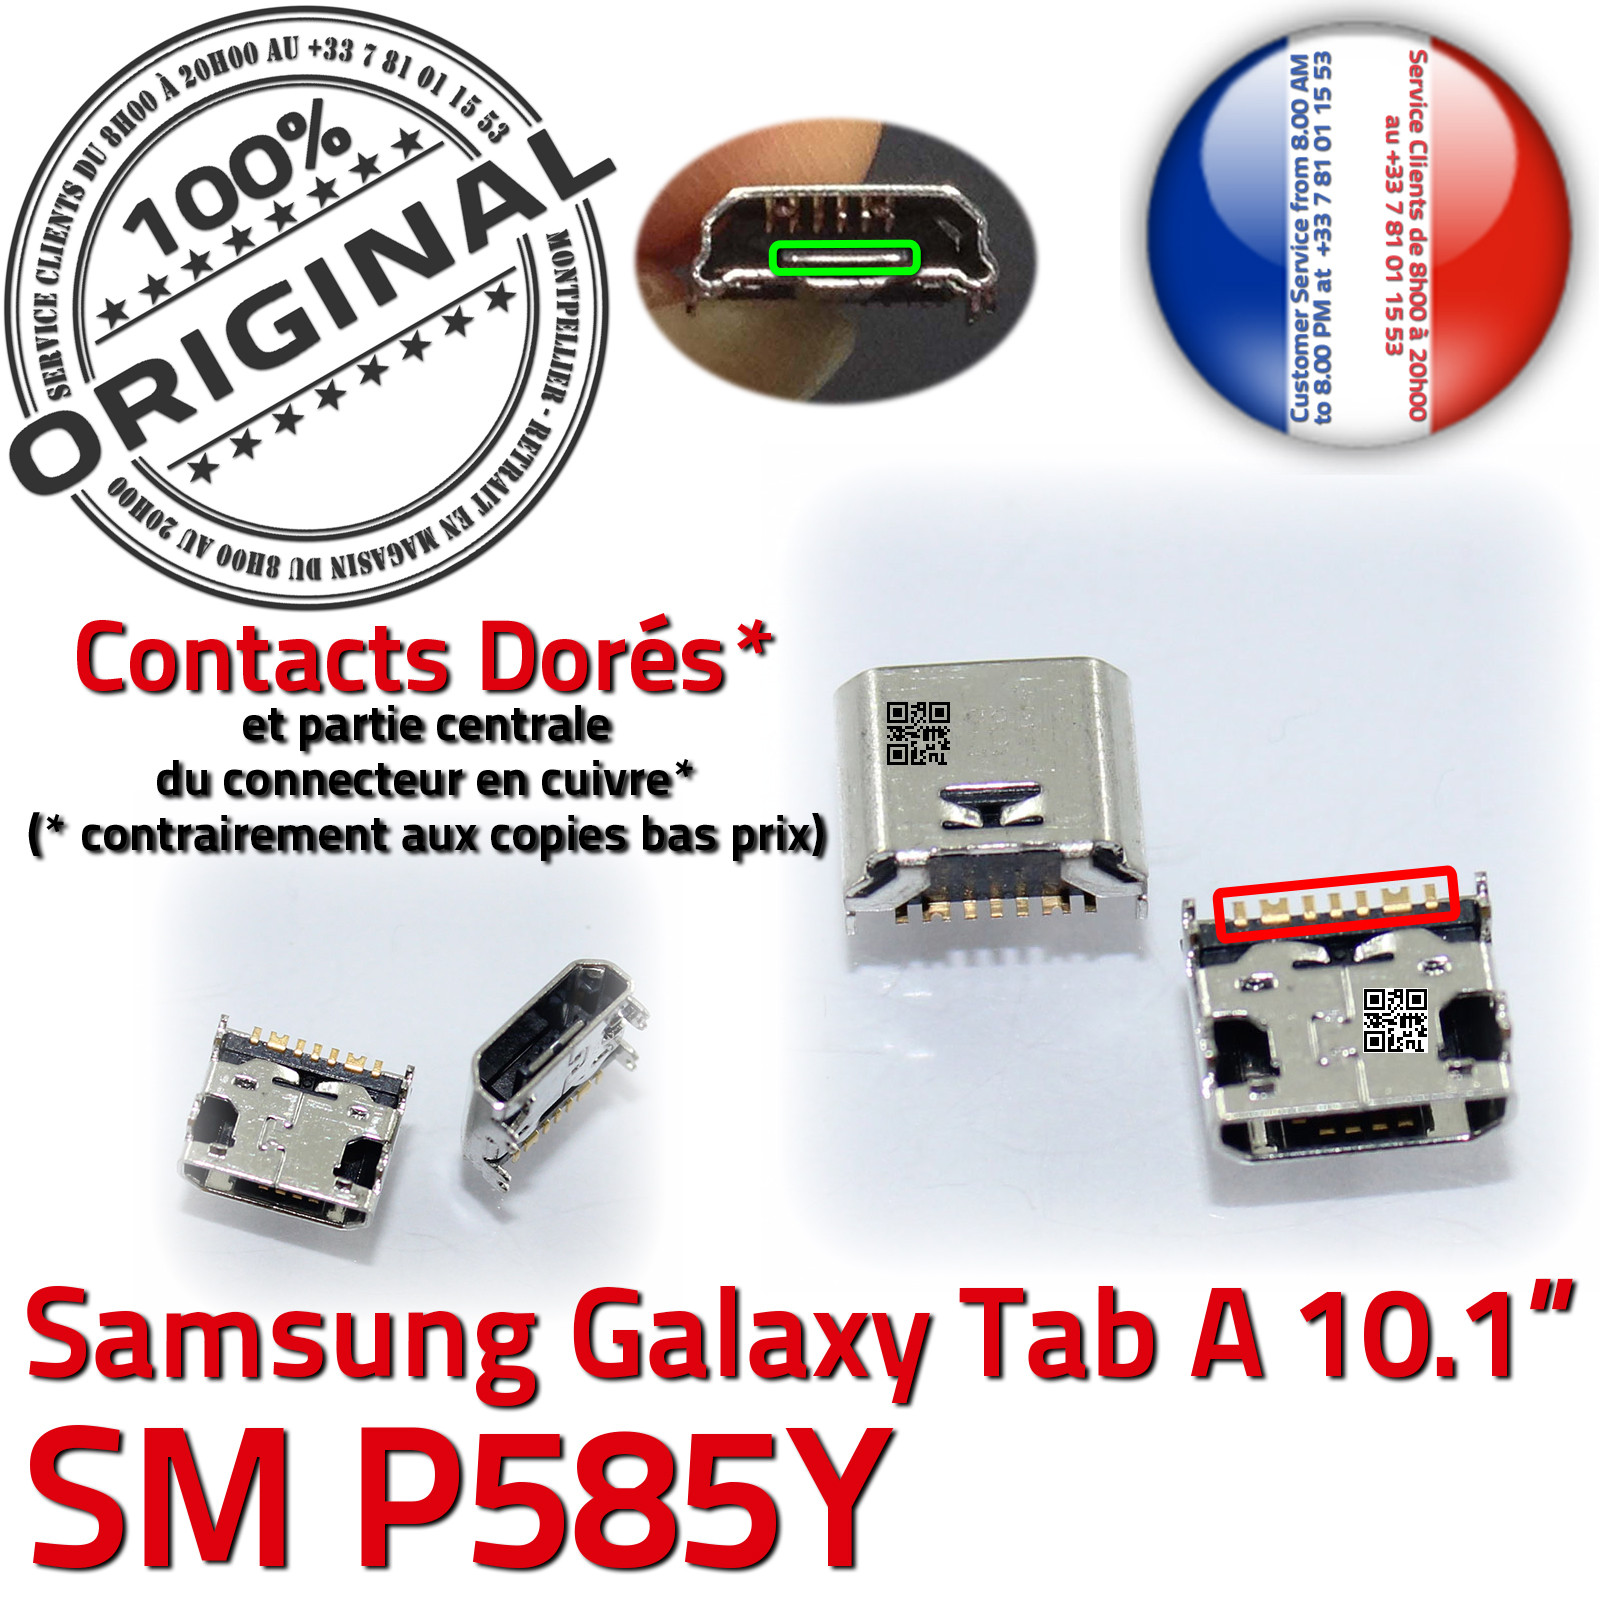 ORIGINAL Samsung Galaxy TAB A SM P585Y Connecteur de charge à souder Micro  USB Pins Dorés Dock Prise Connector Chargeur 10.1 in